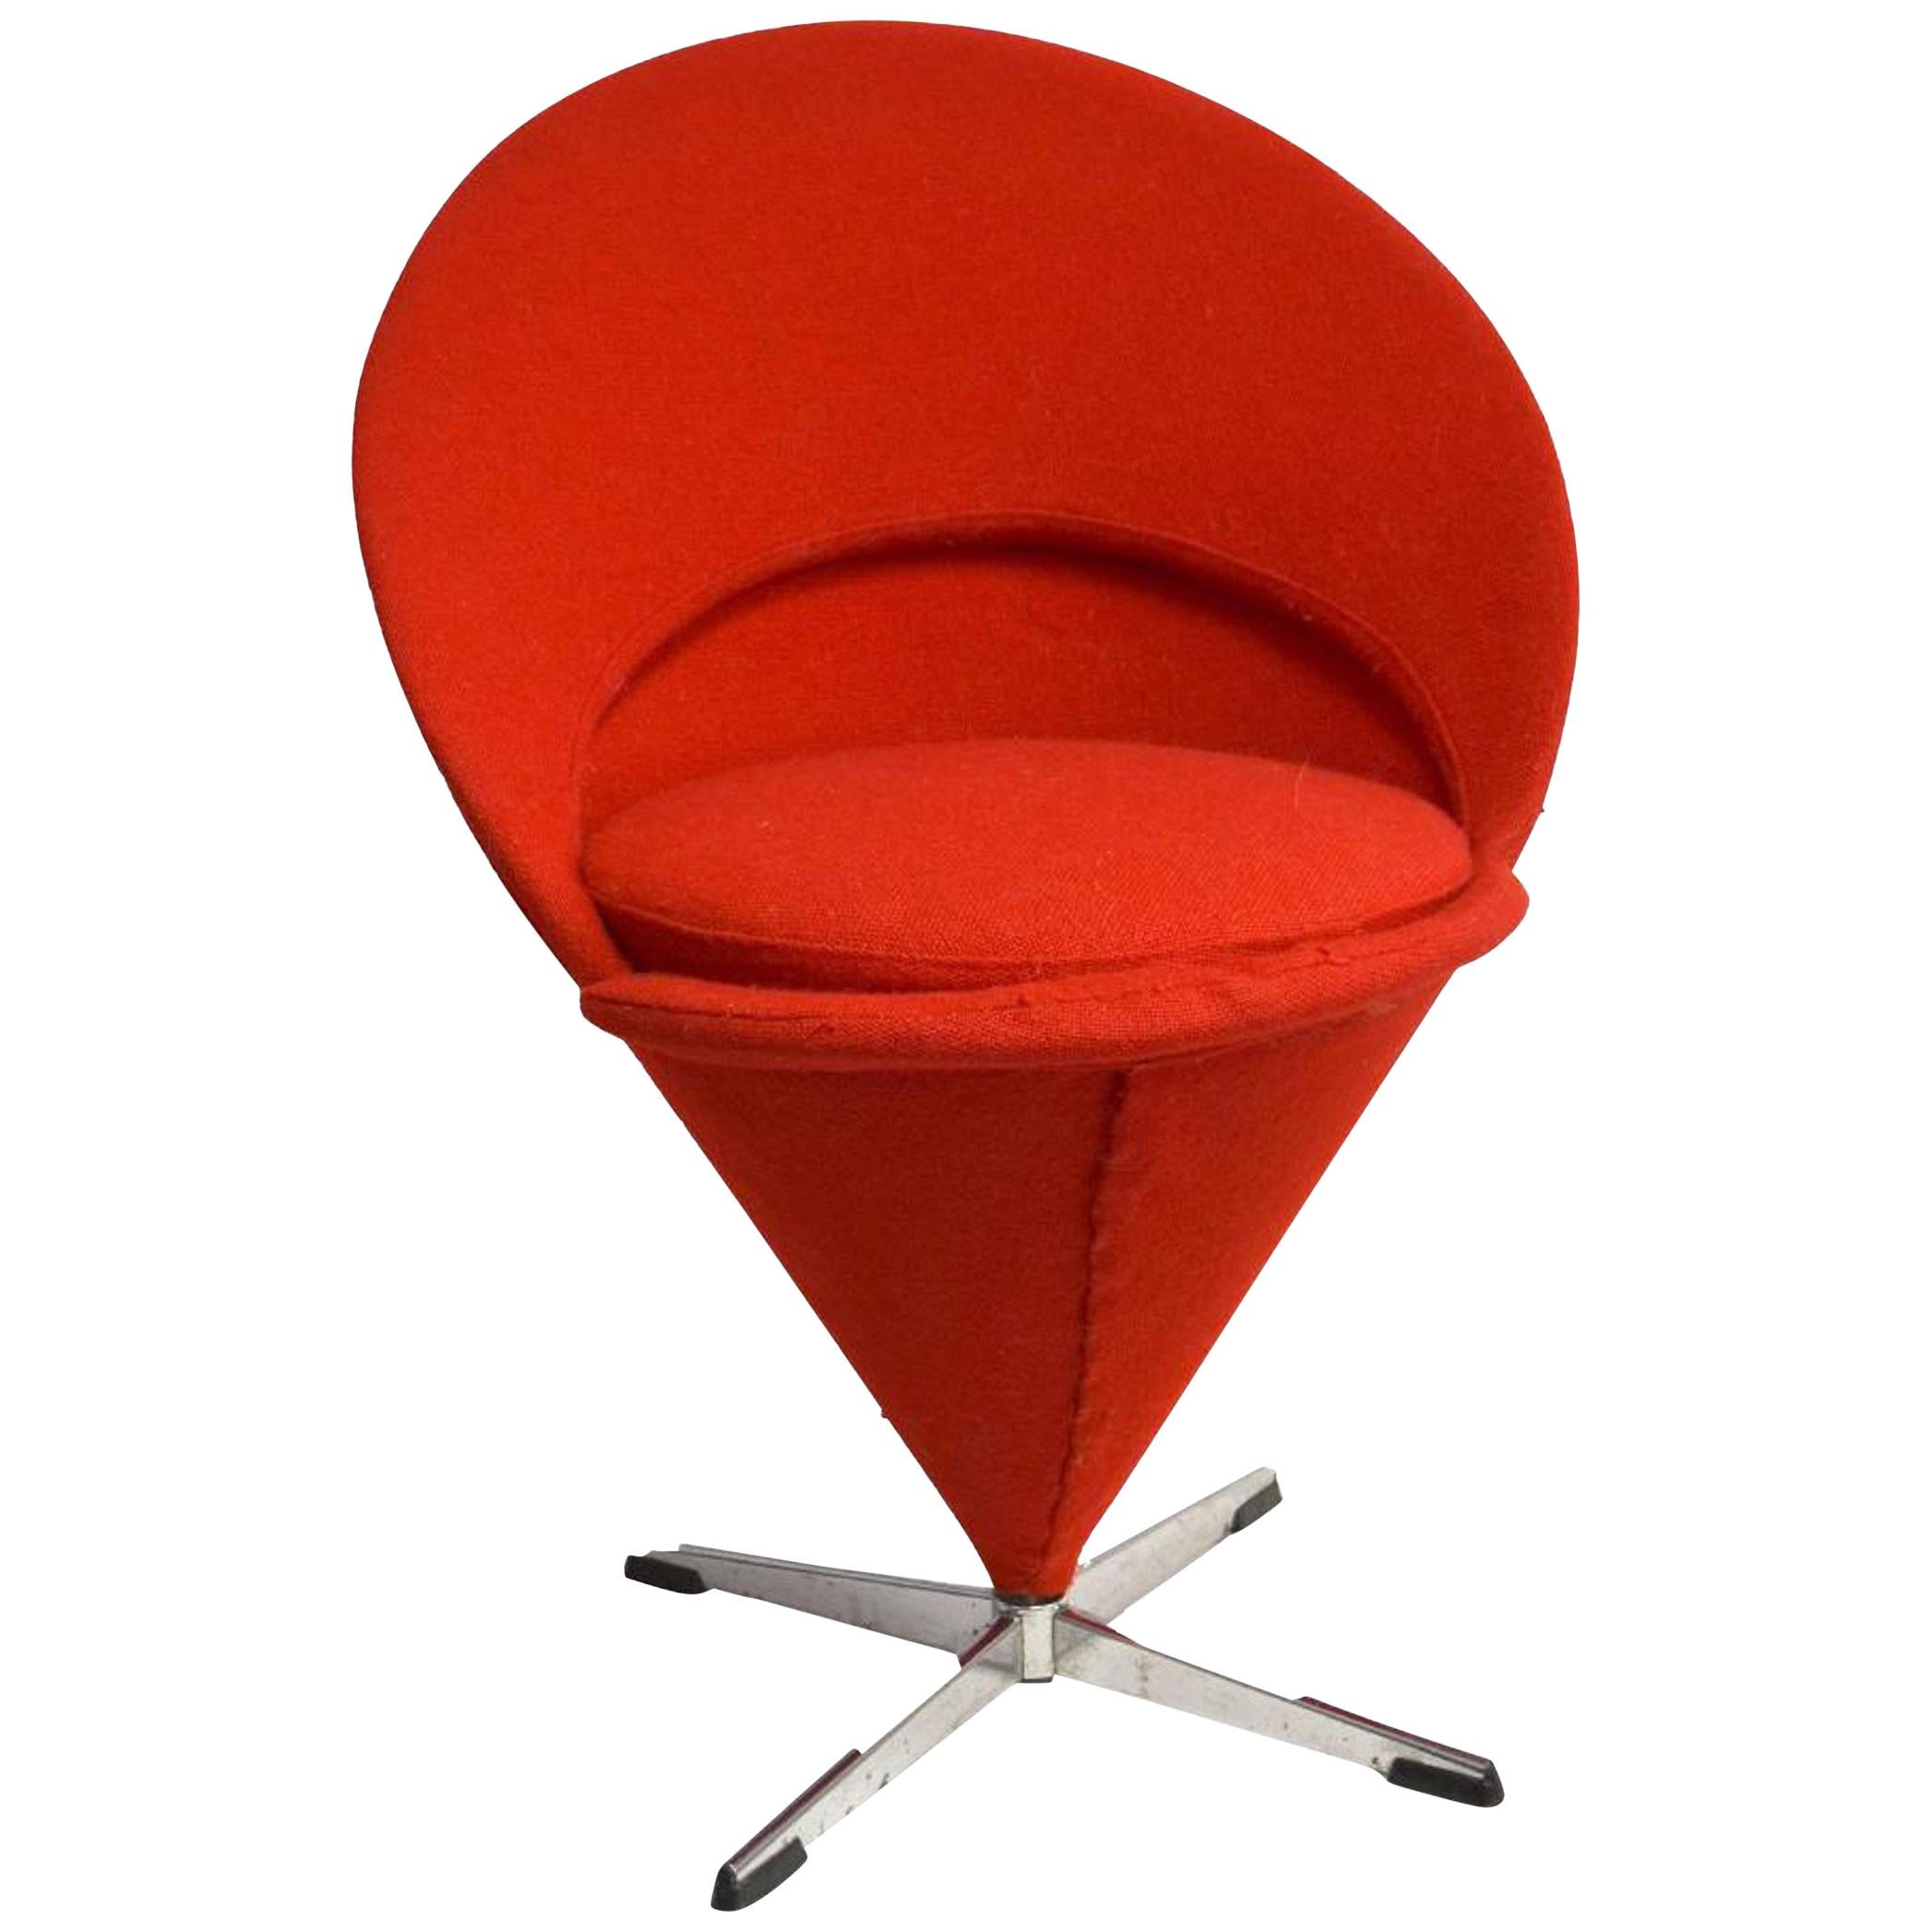 Verner Panton Cone Chair K1 in Cherry Red Wool, Original 1958, Wool Bouclé